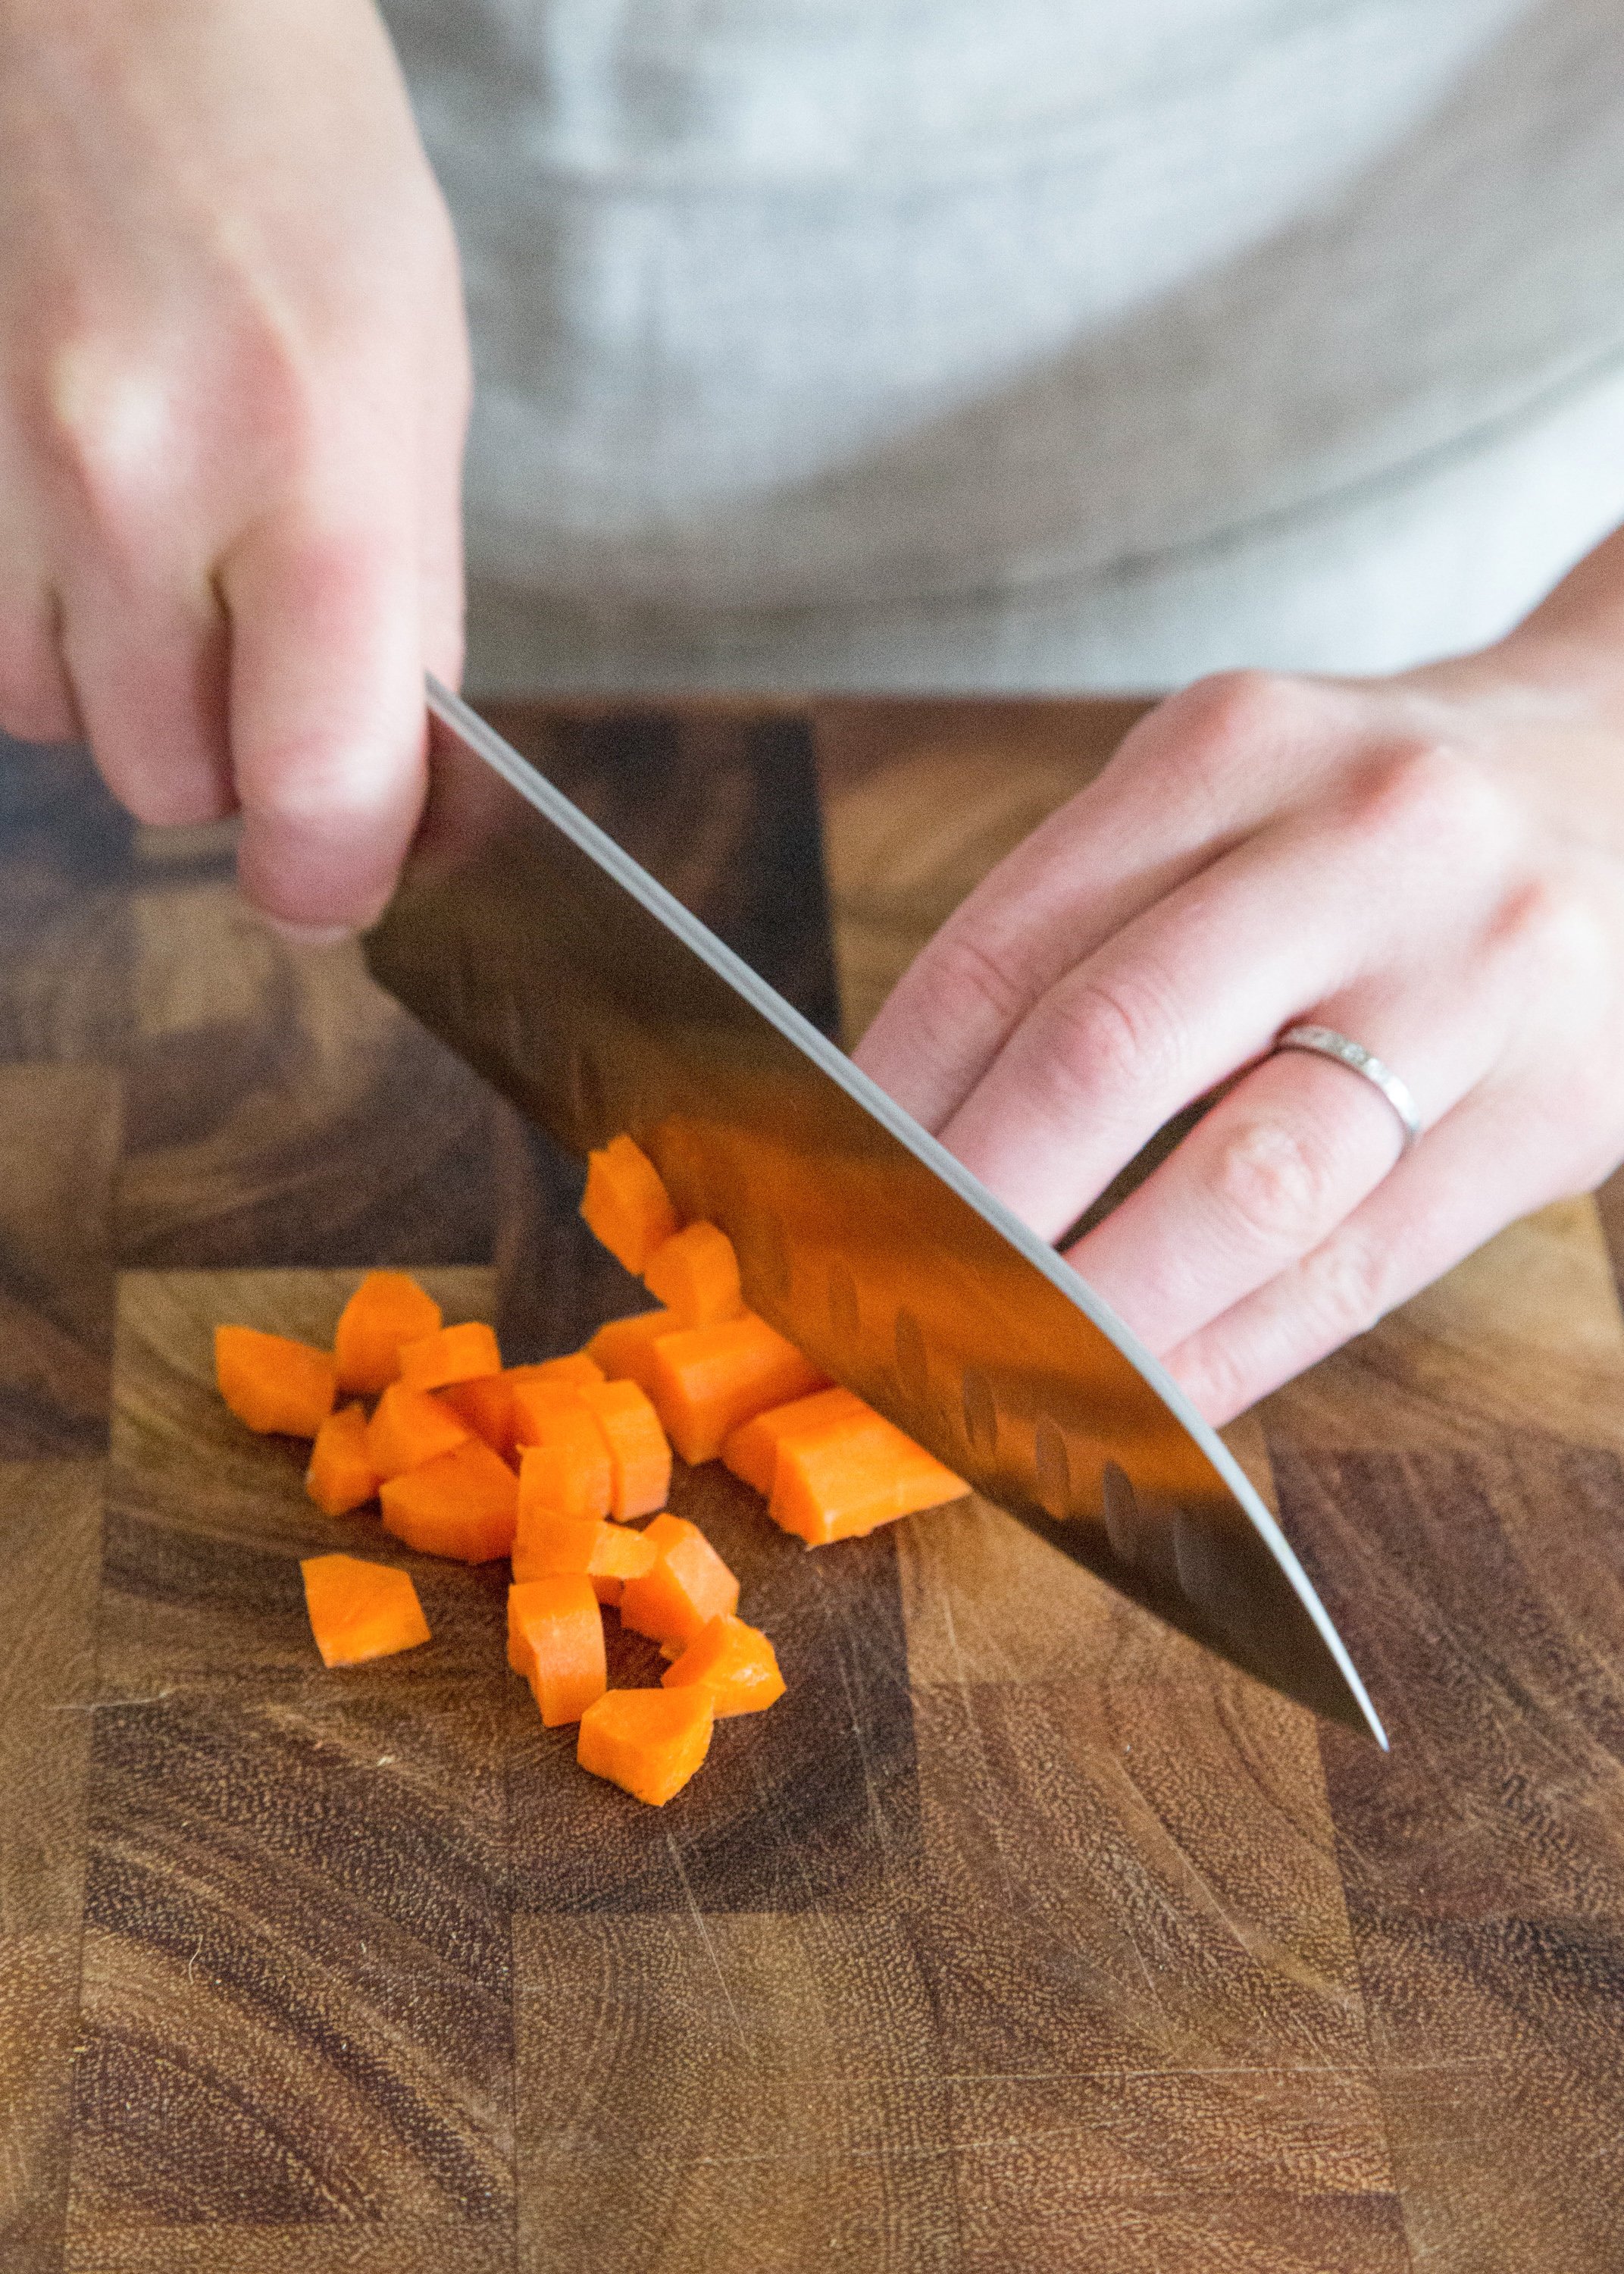 Нож режет овощи. Нарезка овощей с морковкой. Морковь нарезанная. Порезать морковку кубиками. Шинковать морковку.